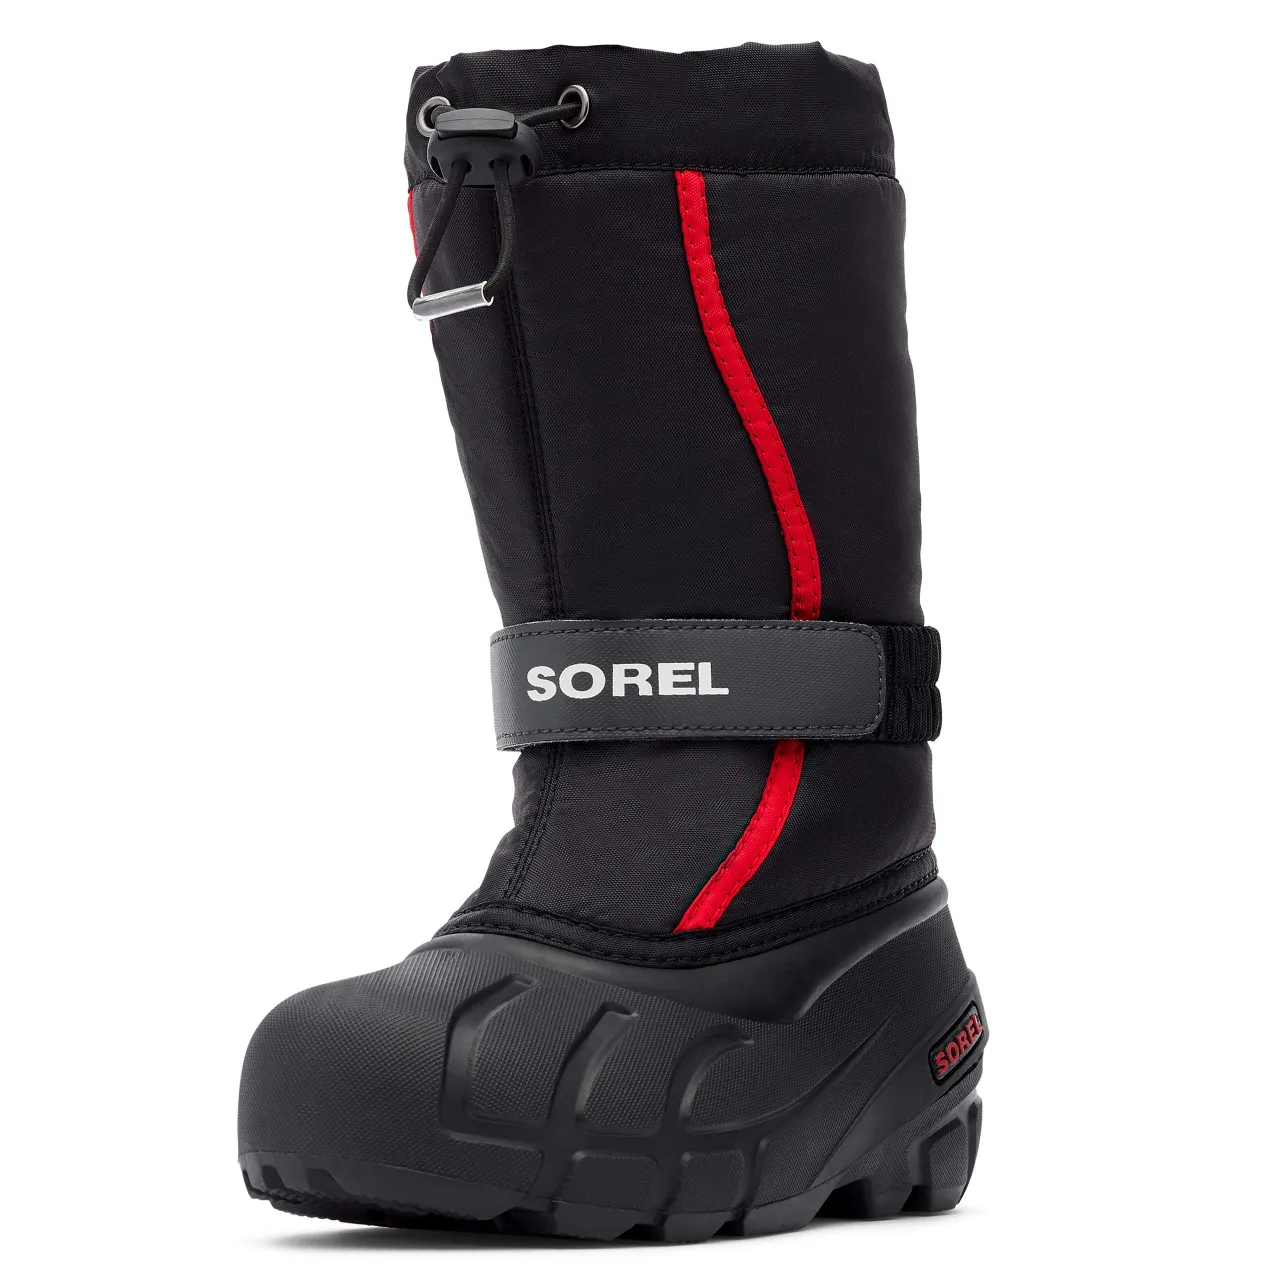 Sorel KIDS FLURRY Waterproof Unisex Baby Snow Boots